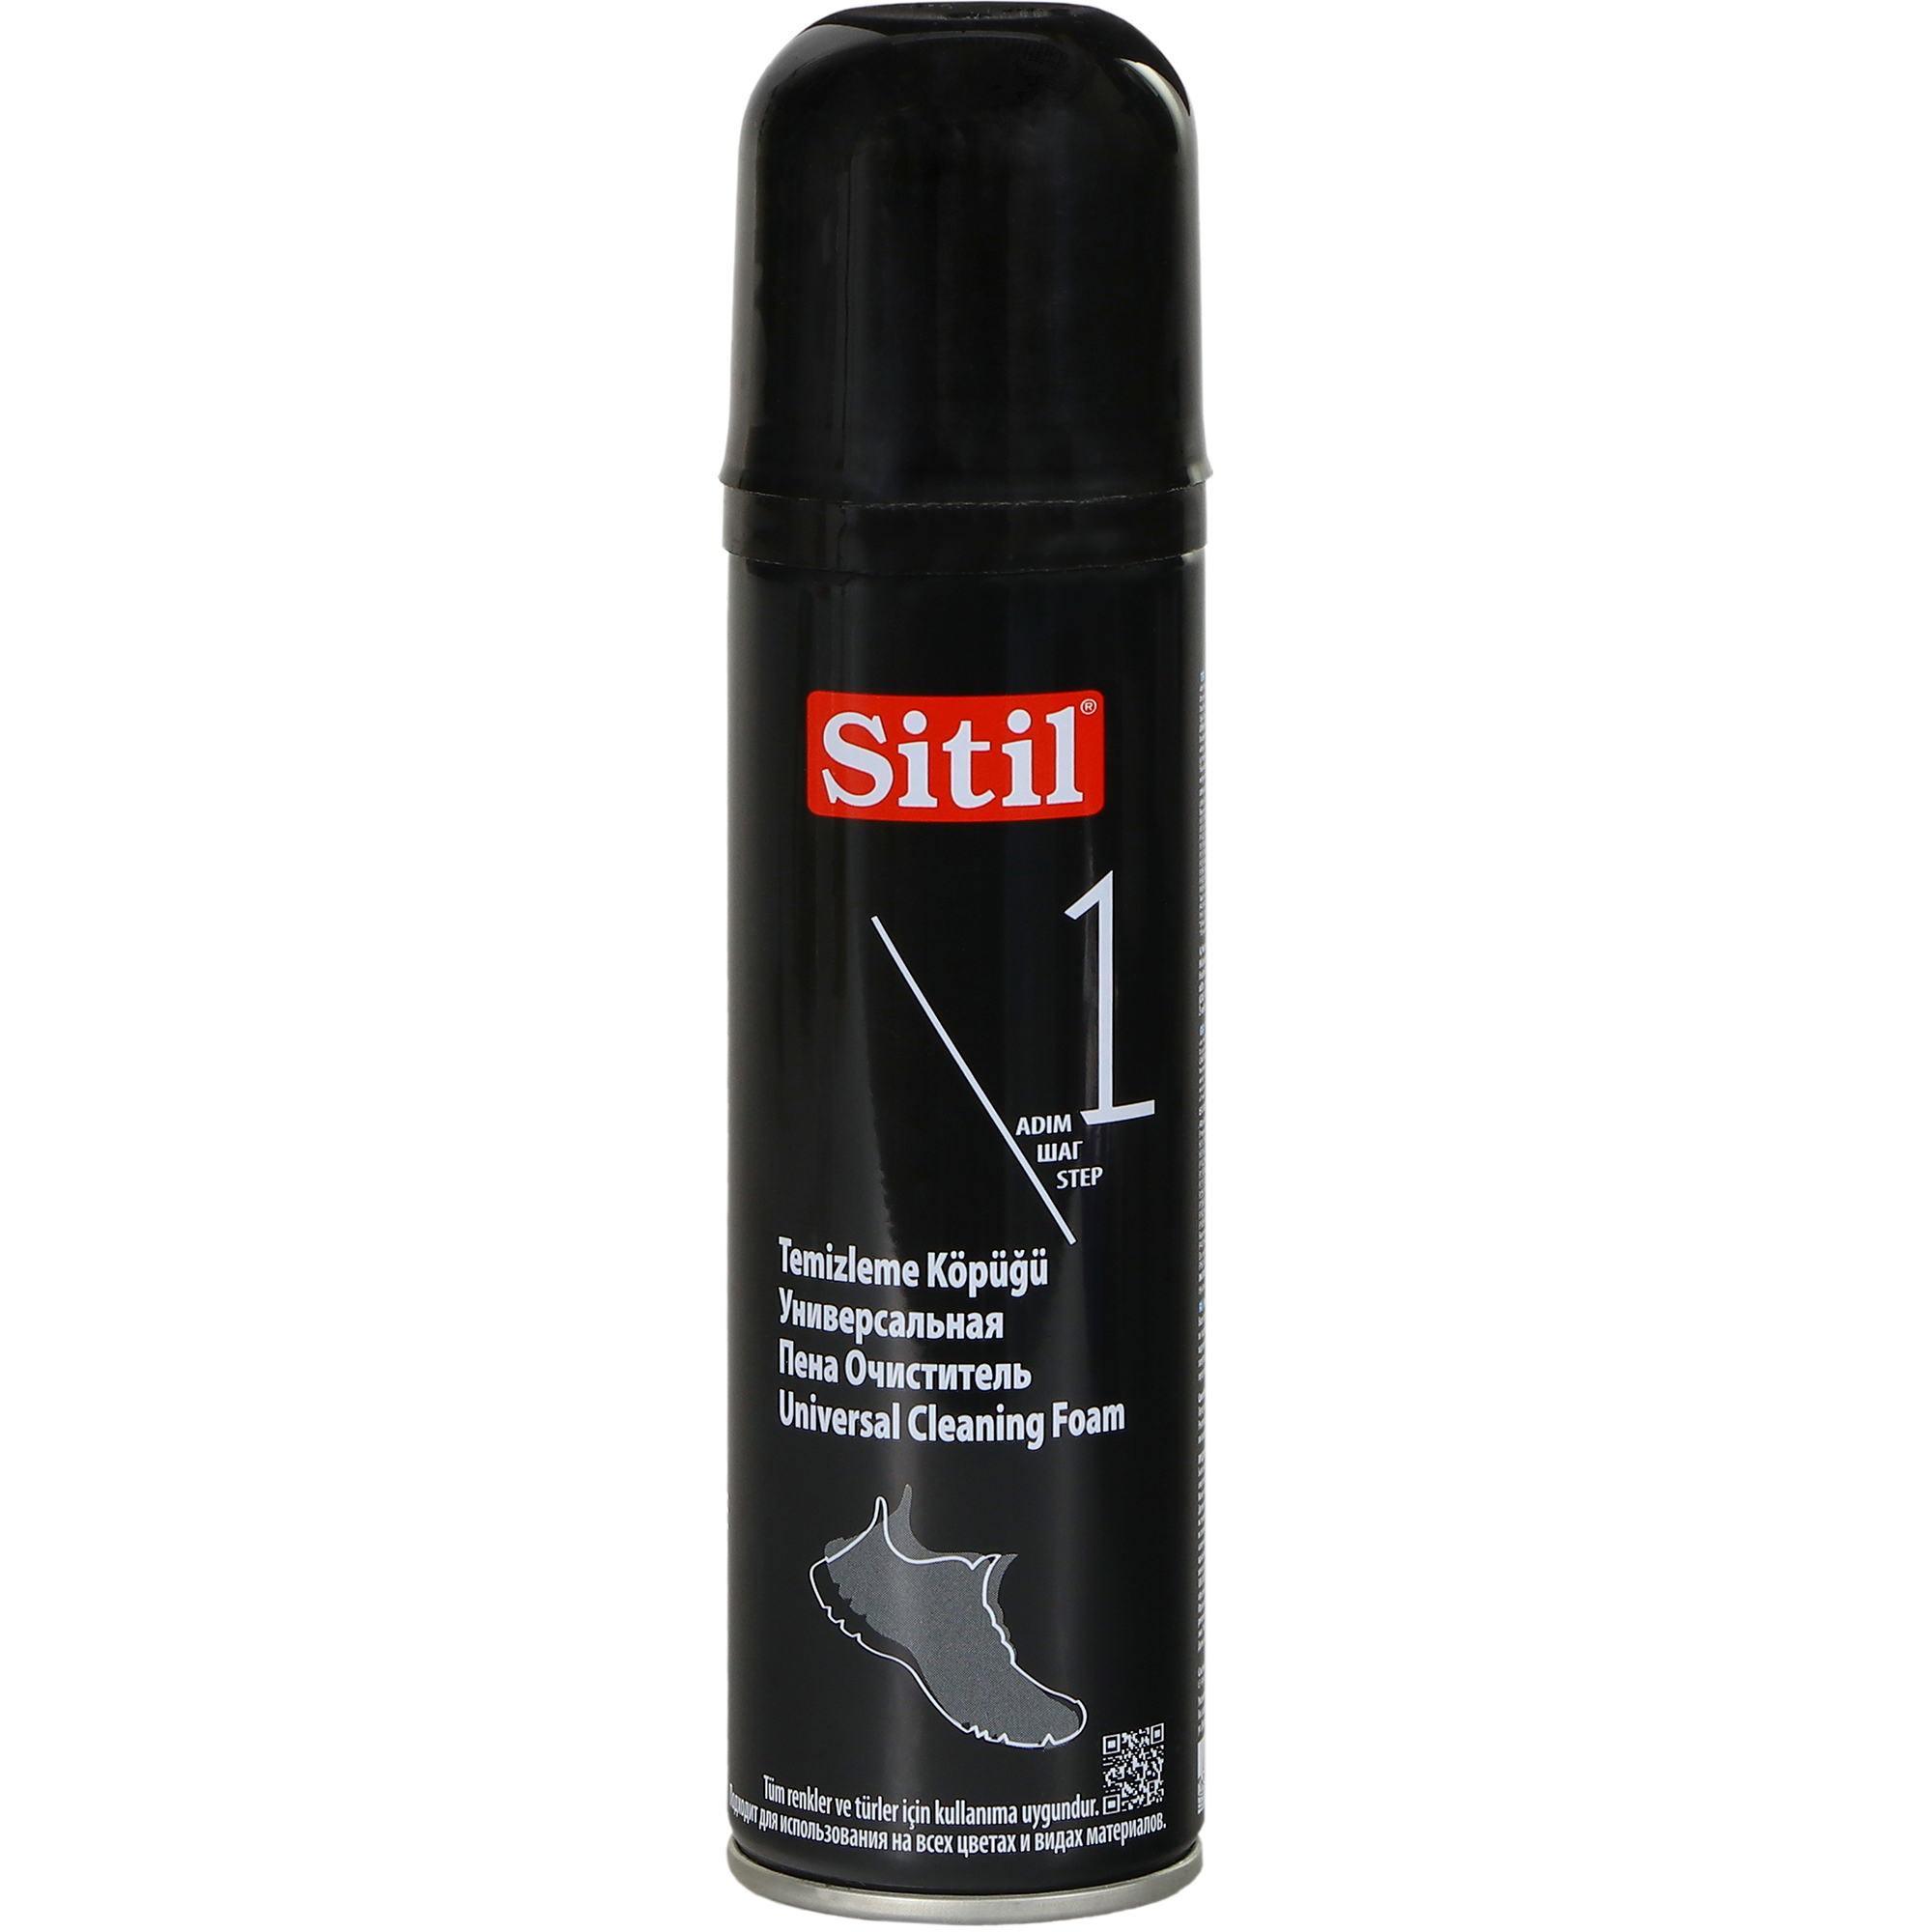 Пена-очиститель Sitil универсальная 150 мл пена очиститель универсальная штрих основной уход для одежды и обуви 150 мл